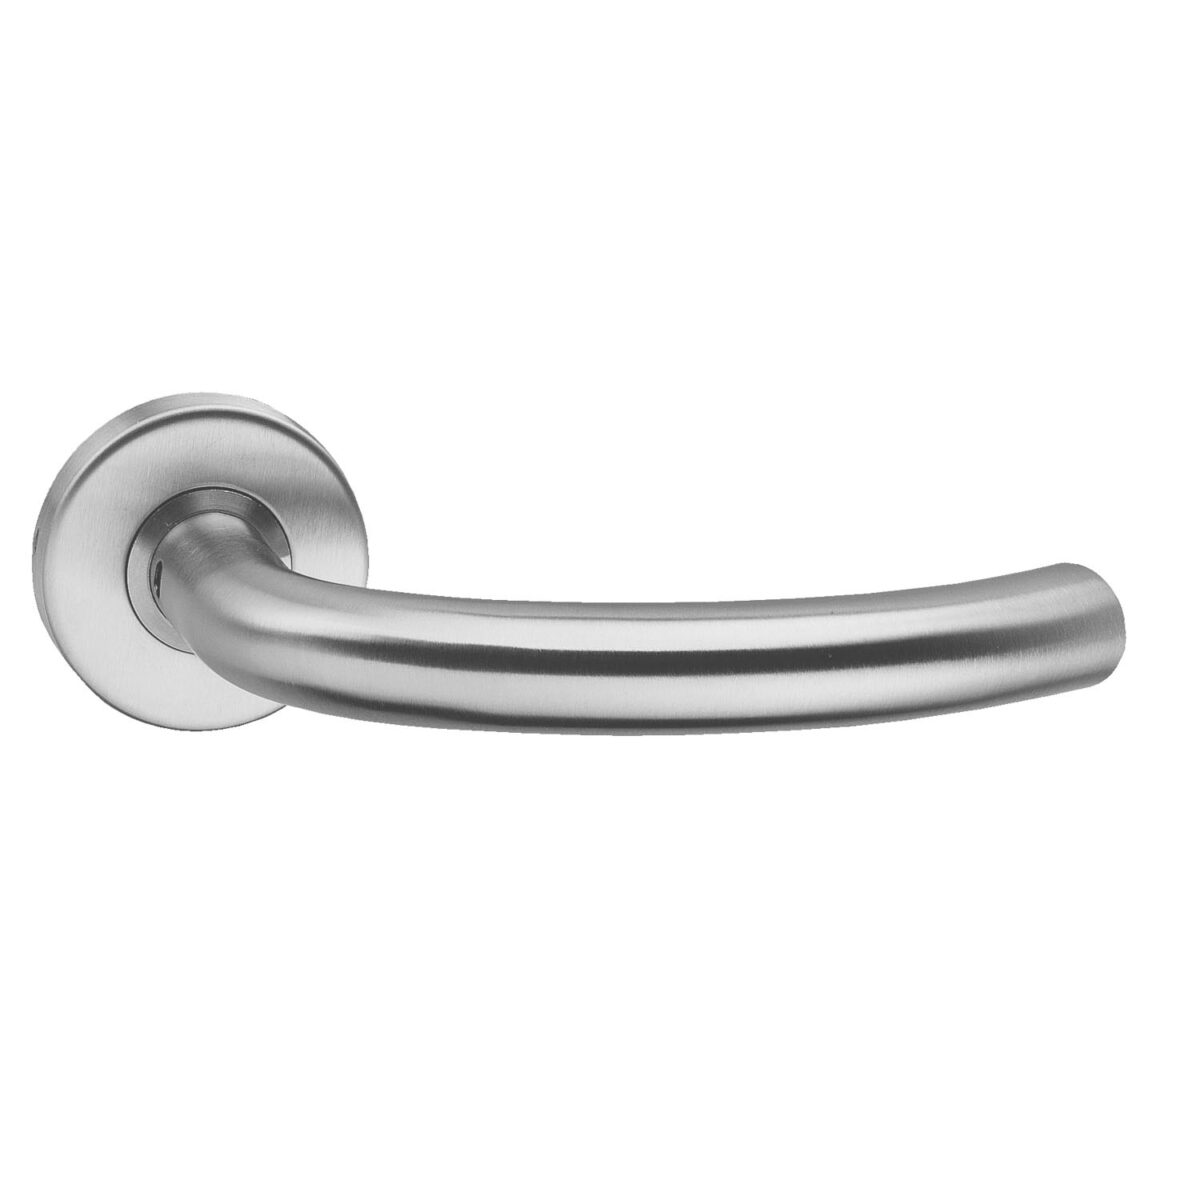 Buy top quality door fittings, half round door handle